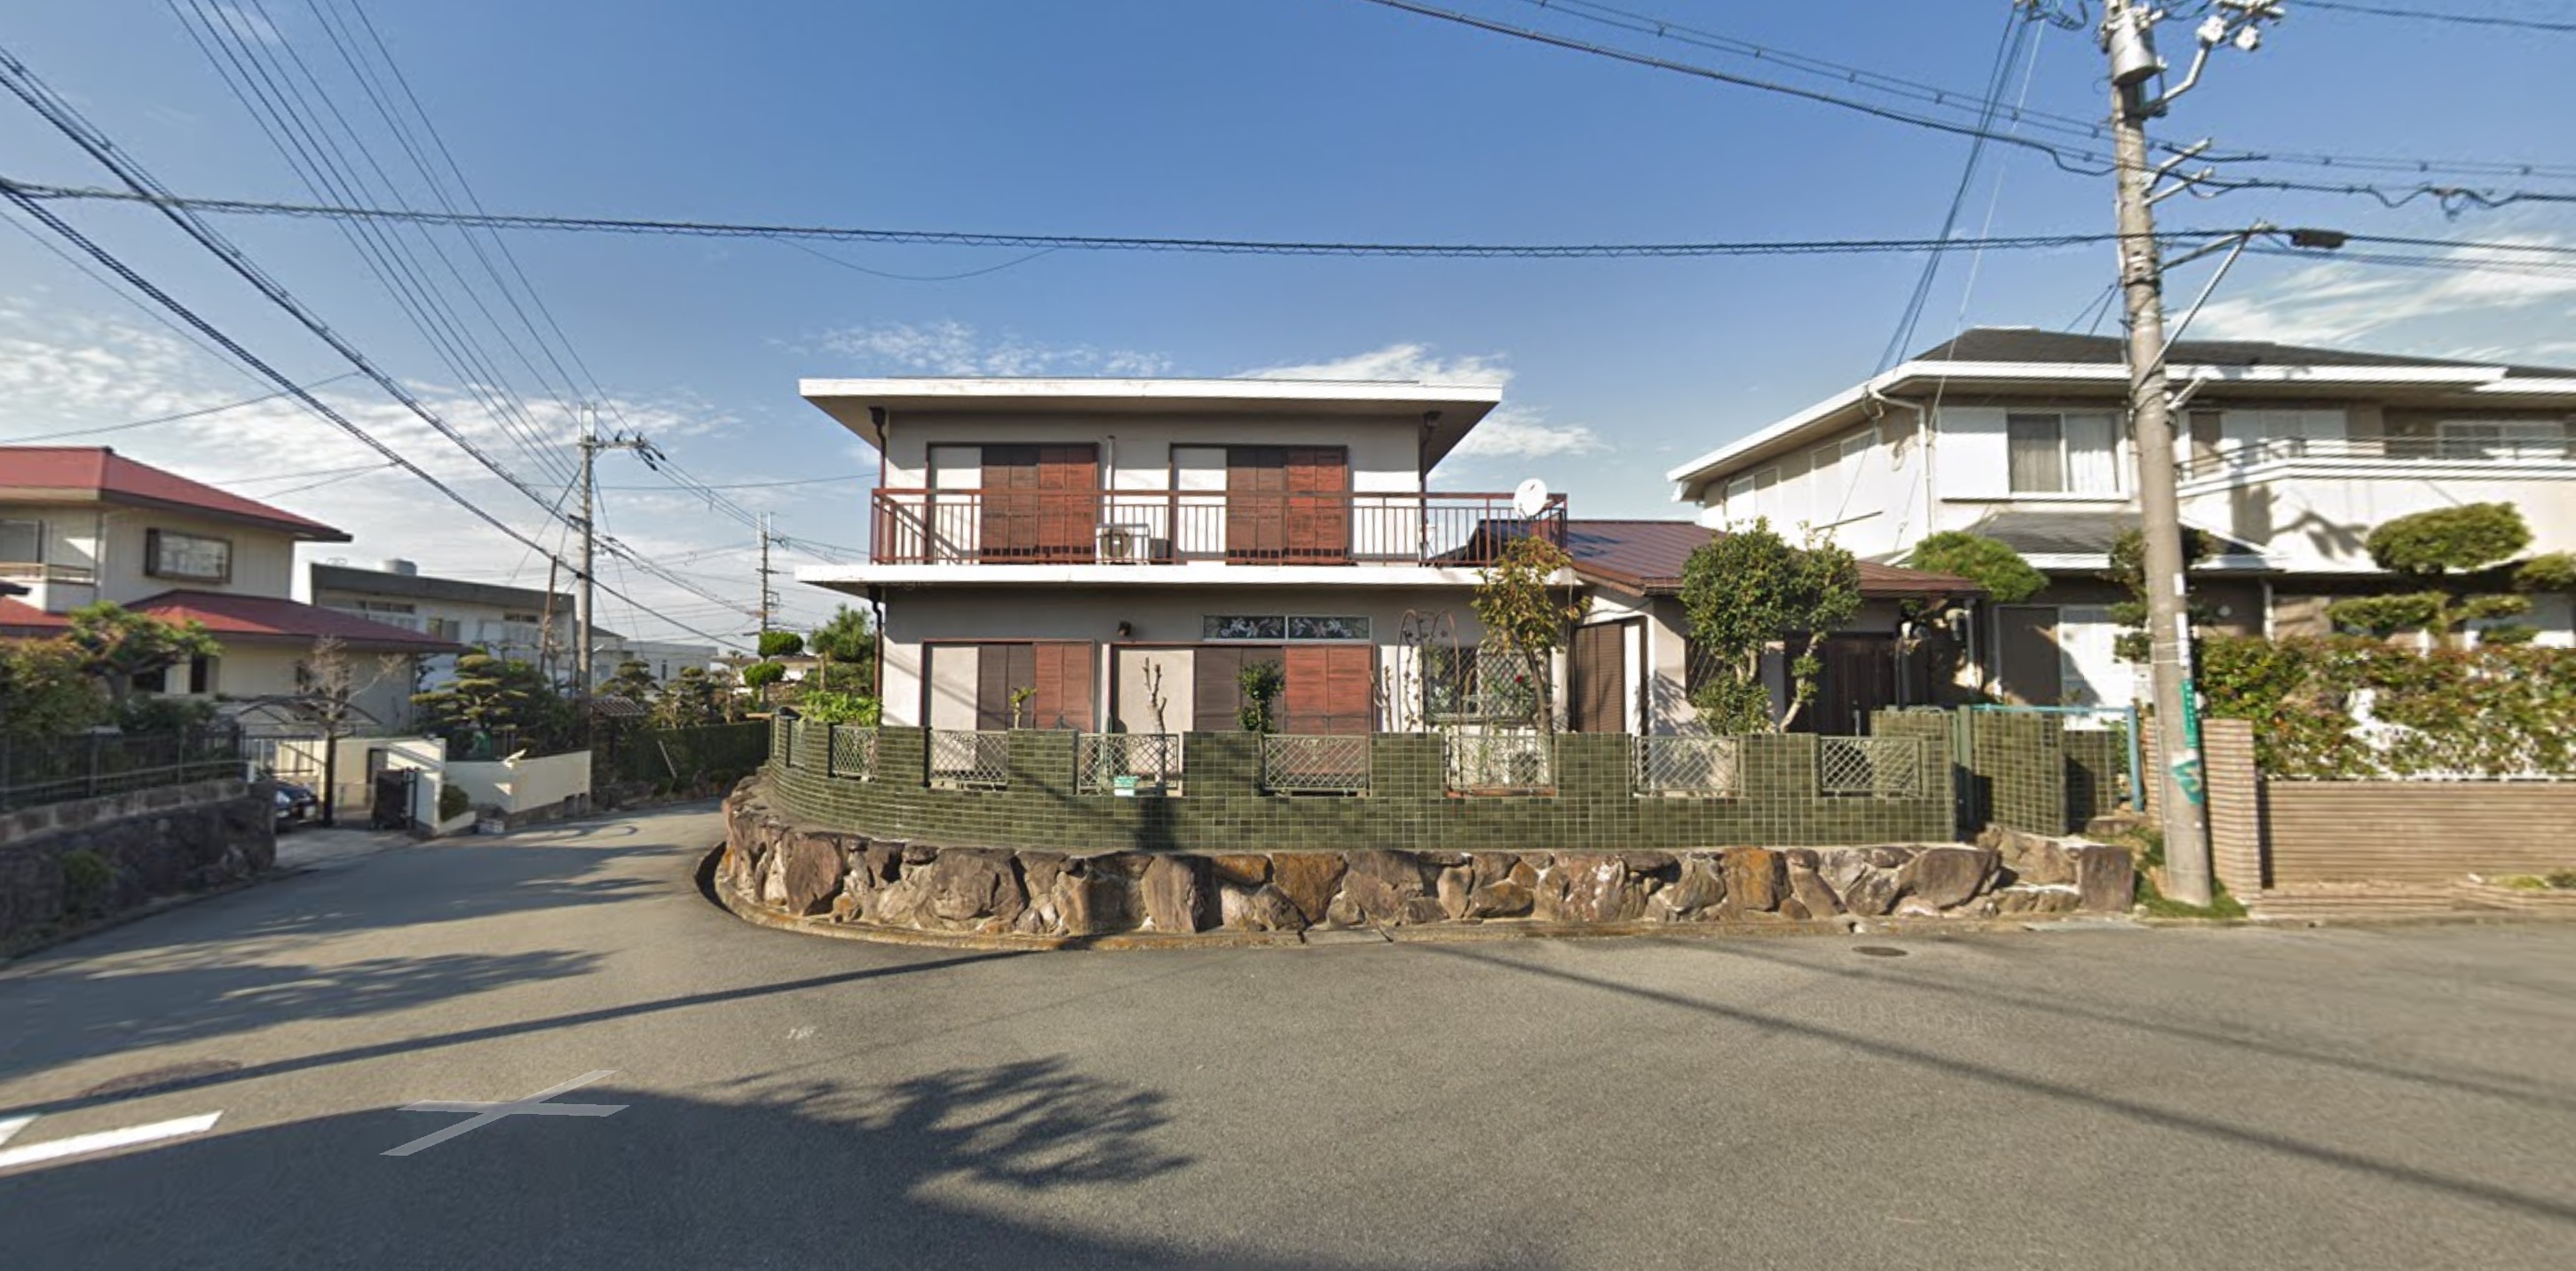 堺市南区若松台3丁にある一戸建の不動産売却査定依頼をいただきました